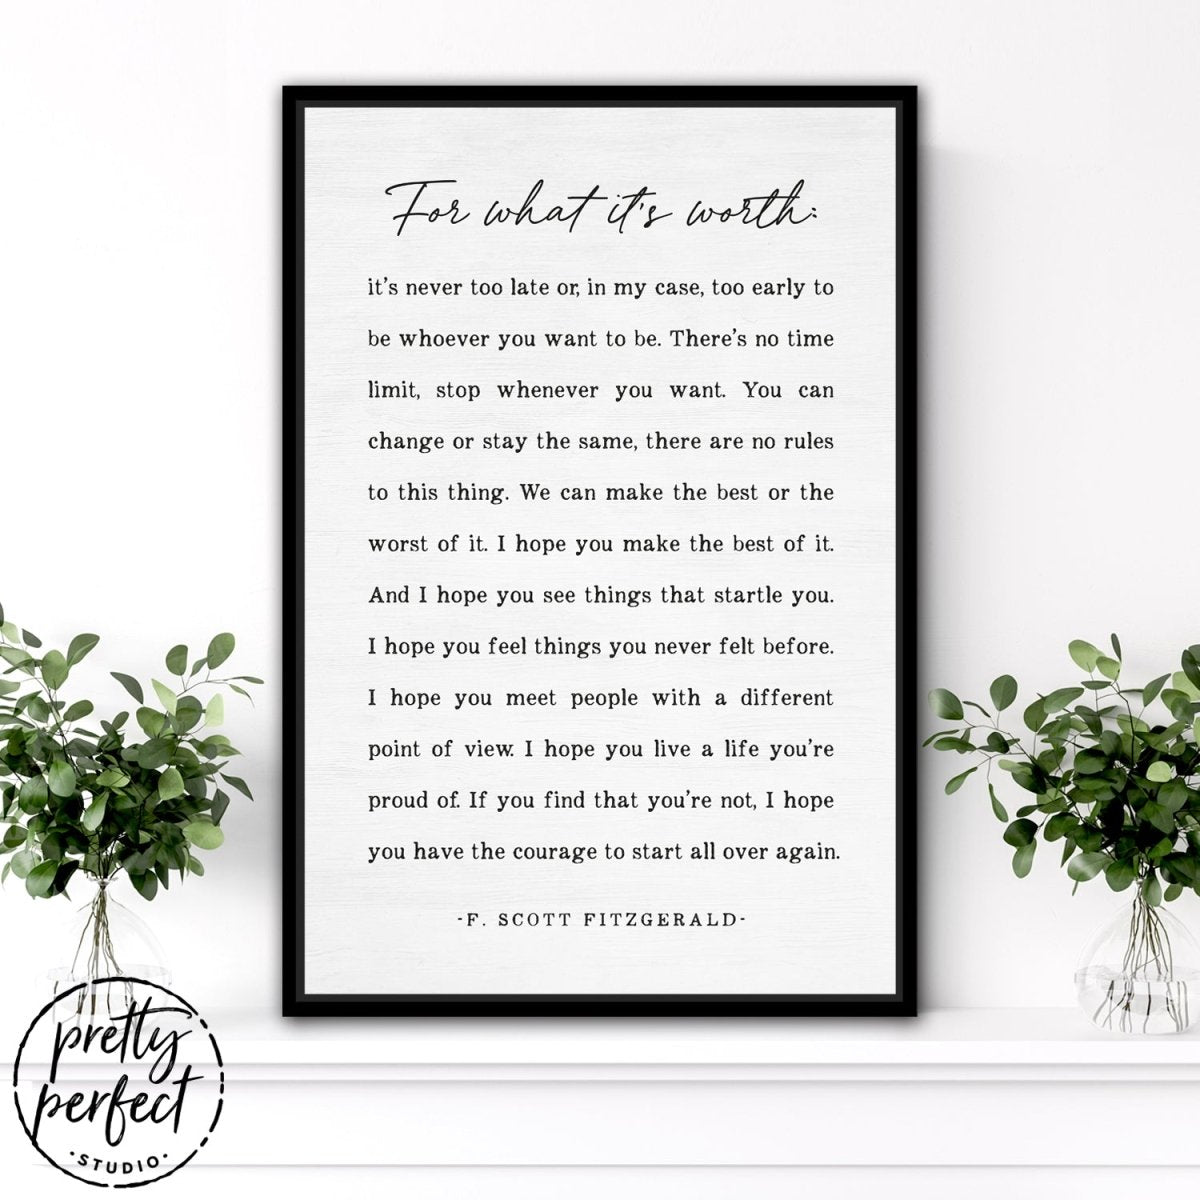 F. Scott Fitzgerald Quote Sign in Family Room - Pretty Perfect Studio